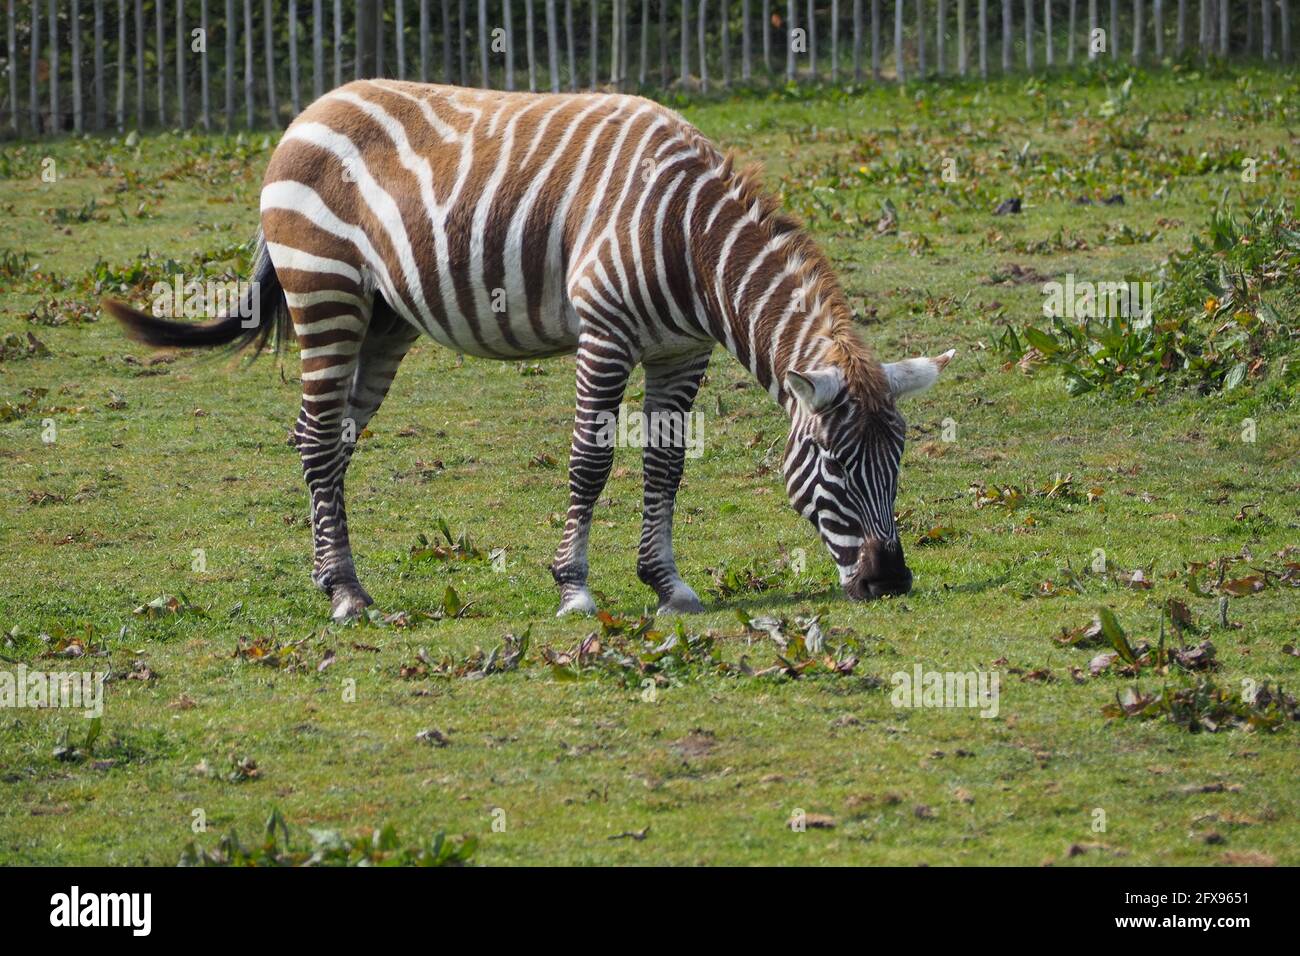 La Zebra senza maniche gode del sole primaverile e dell'erba Foto Stock